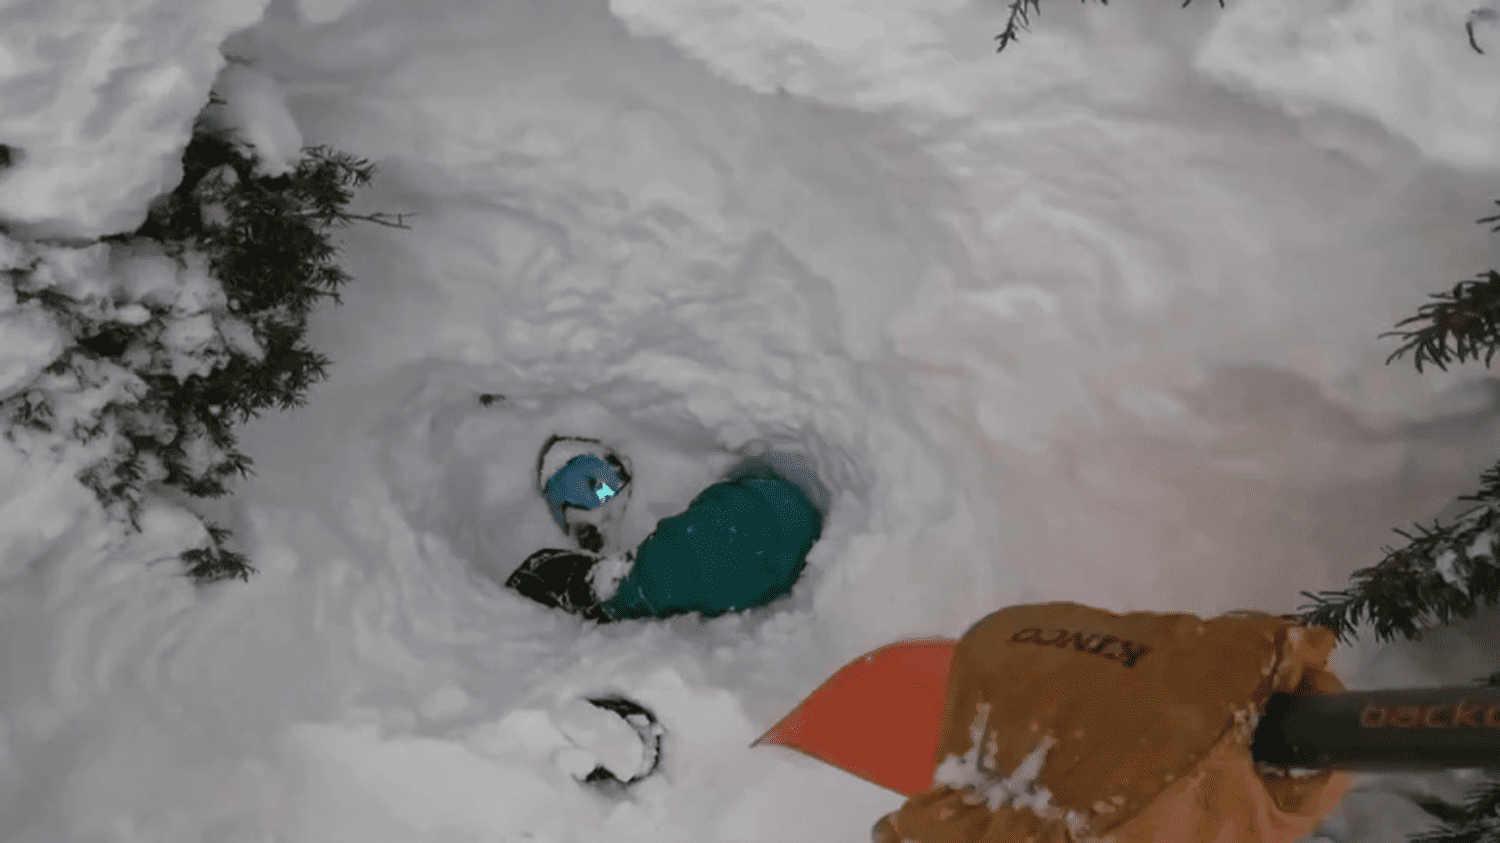 un snowboarder miraculeusement sauvé par un skieur